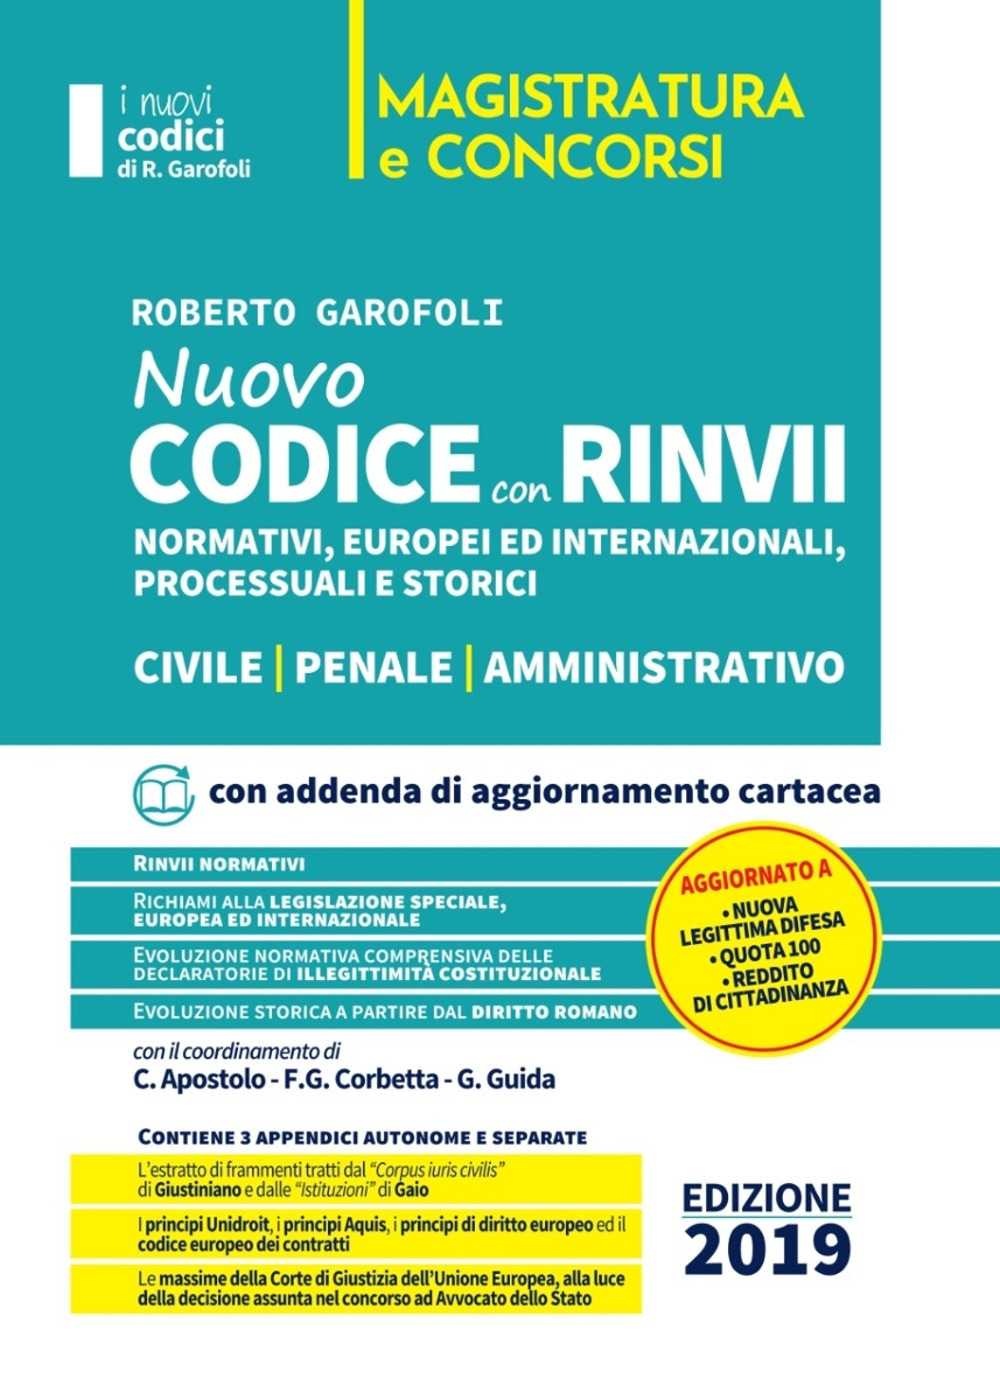 Nuovo codice con rinvii. Nominativi, europei ed internazionali, processuali, storici e di principio. Civile-penale-amministrativo